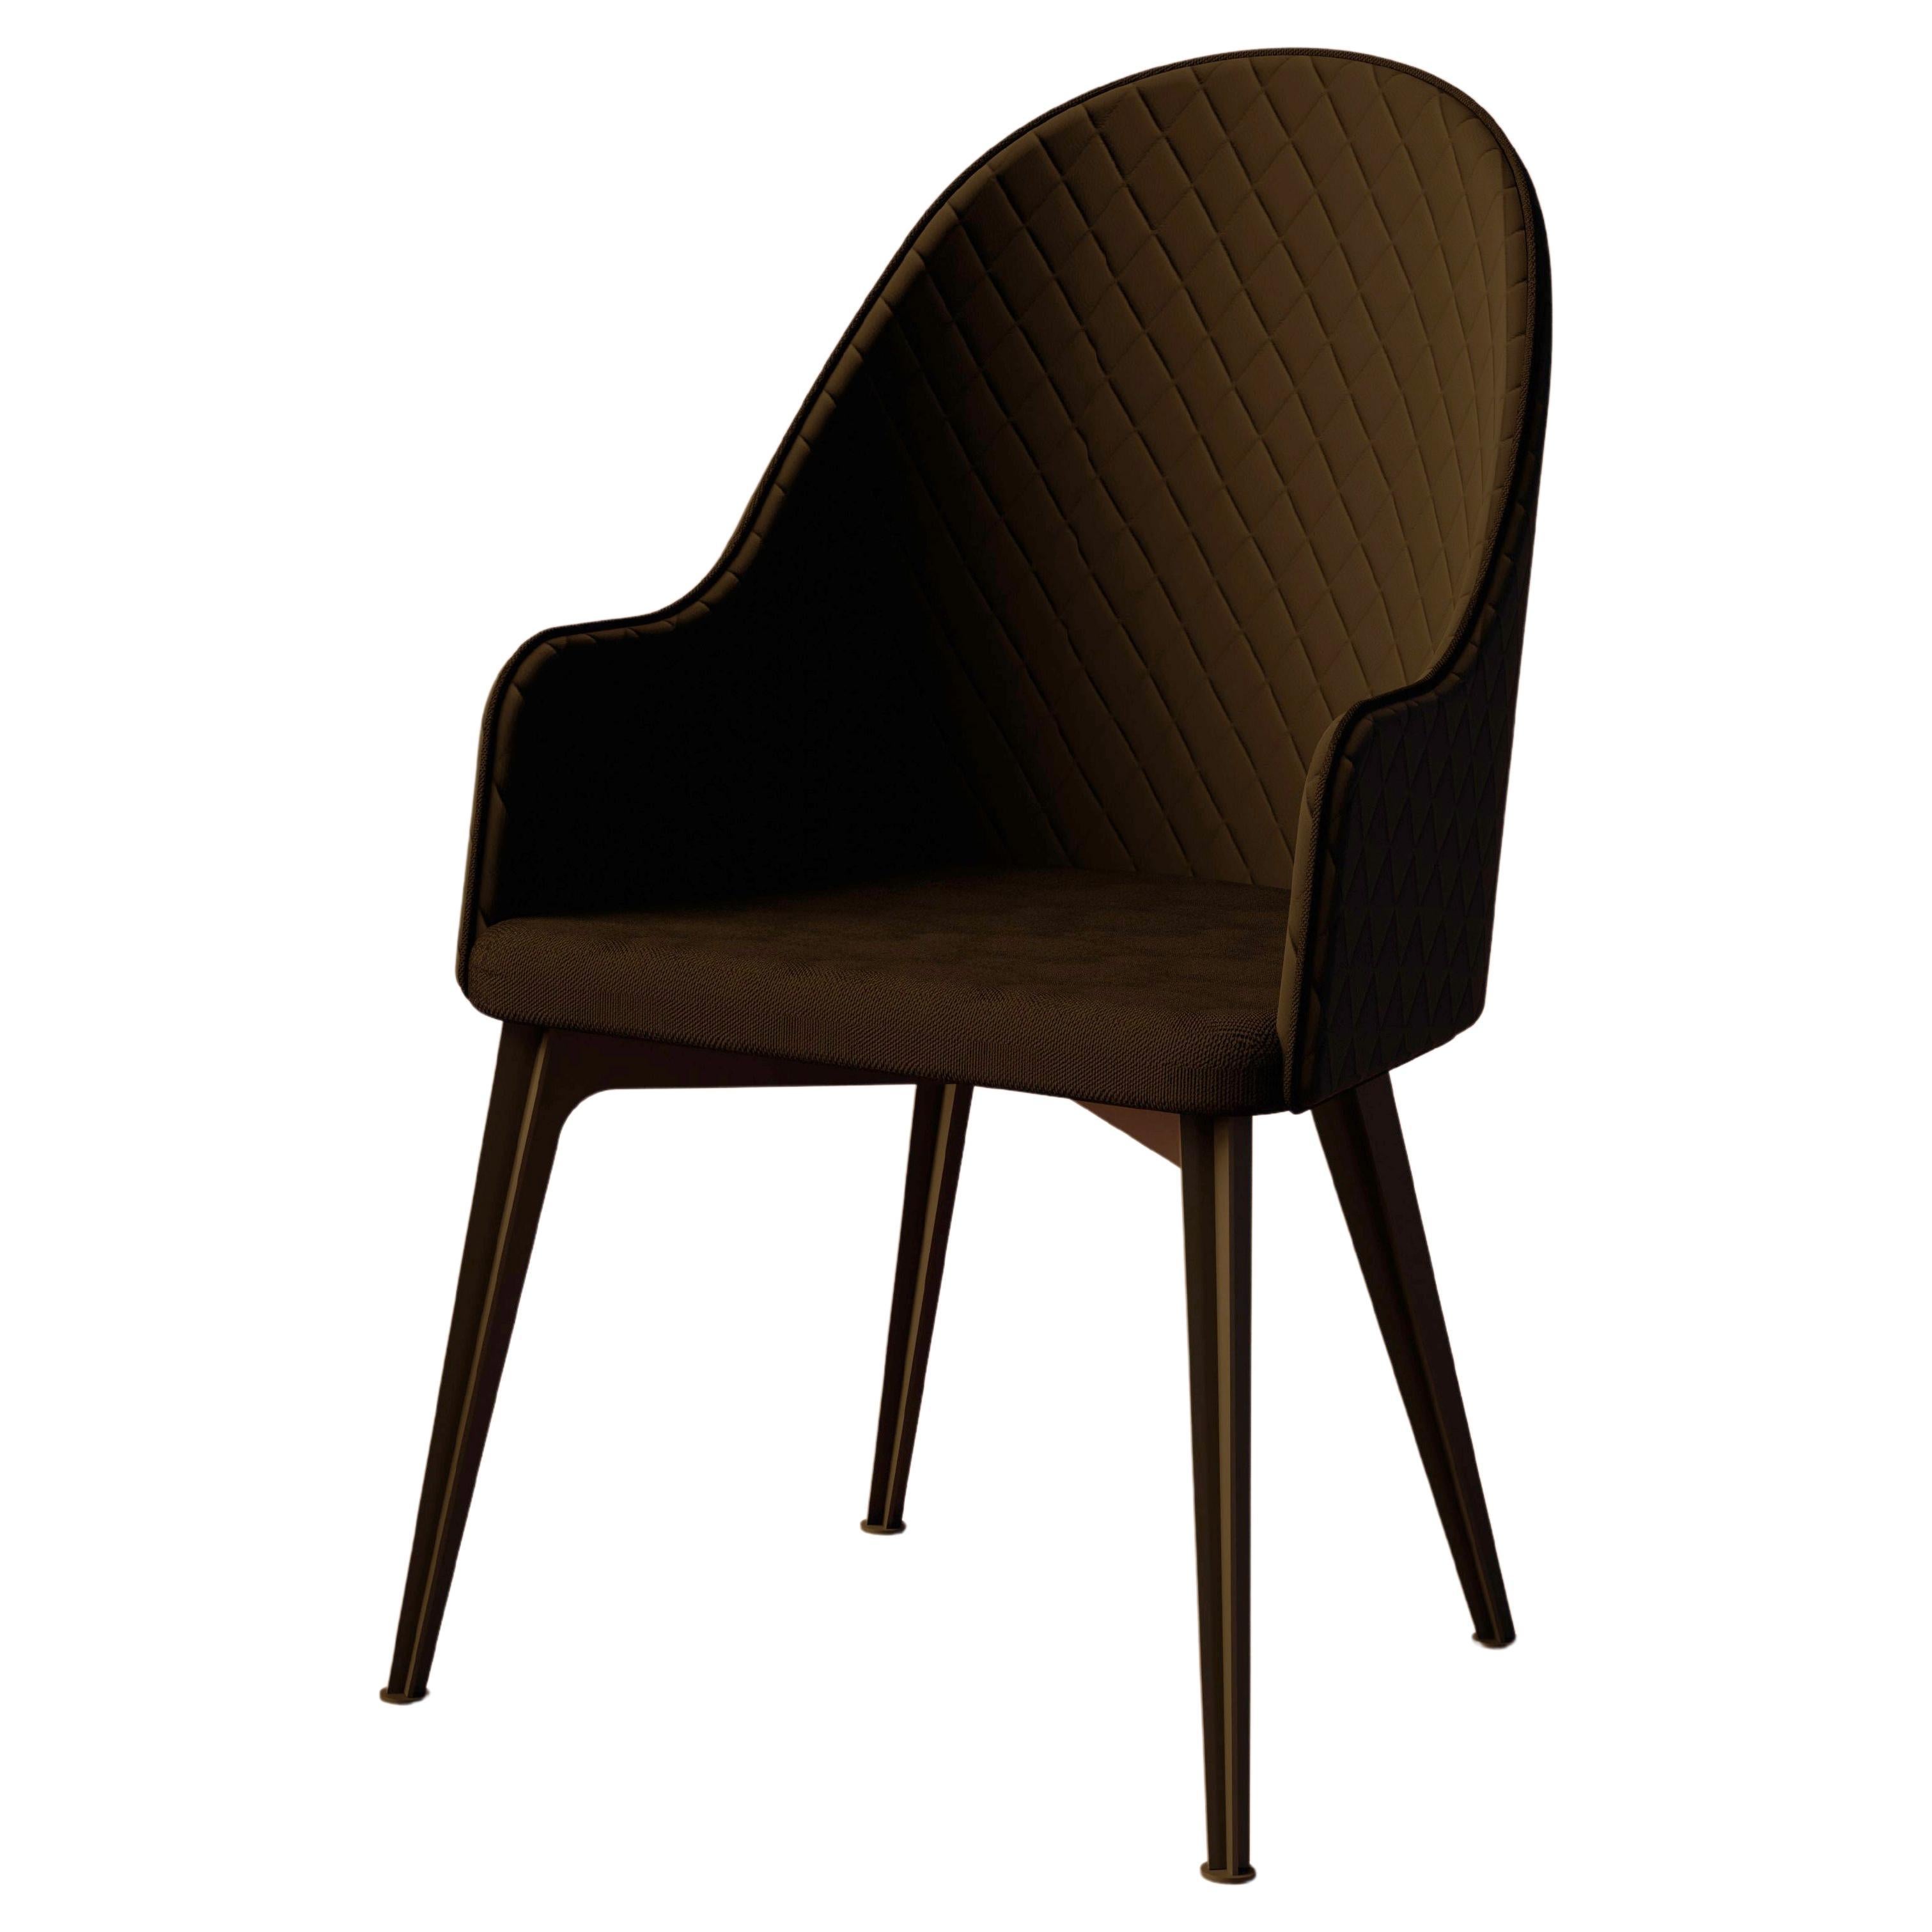 Der Lunana-Stuhl verbindet elegante Formen mit zeitloser Funktionalität und bietet eine bequeme und praktische Sitzlösung, die für eine lange Lebensdauer konzipiert und hergestellt wurde. Die Collection'S ist ab sofort in einer Auswahl von Farben